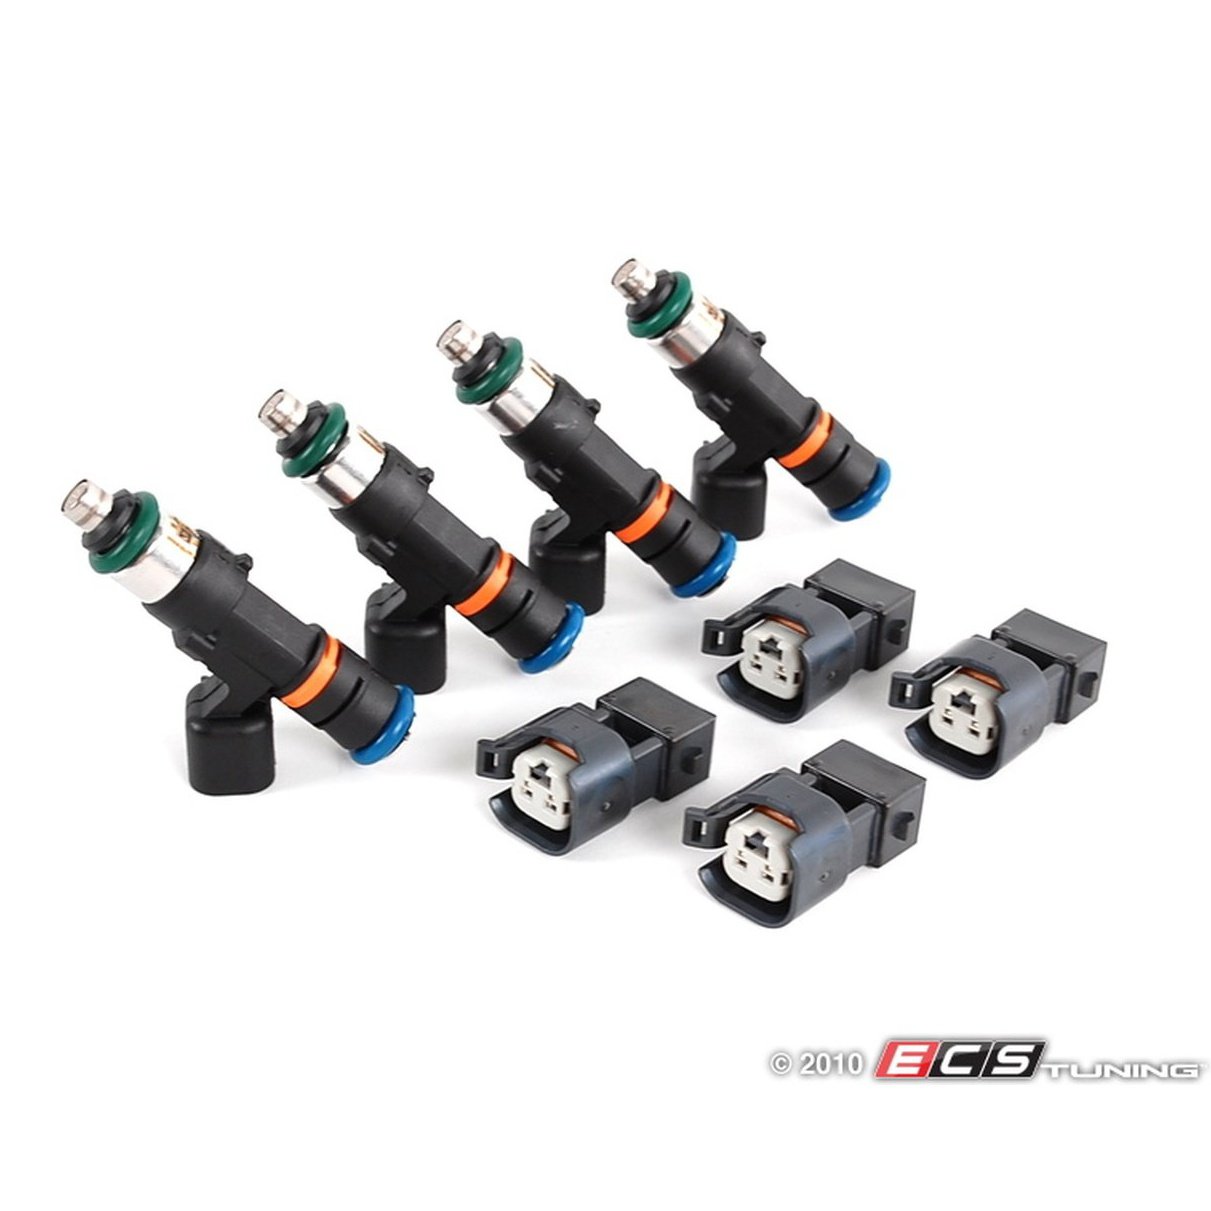 Bosch 550cc Fuel Injectors